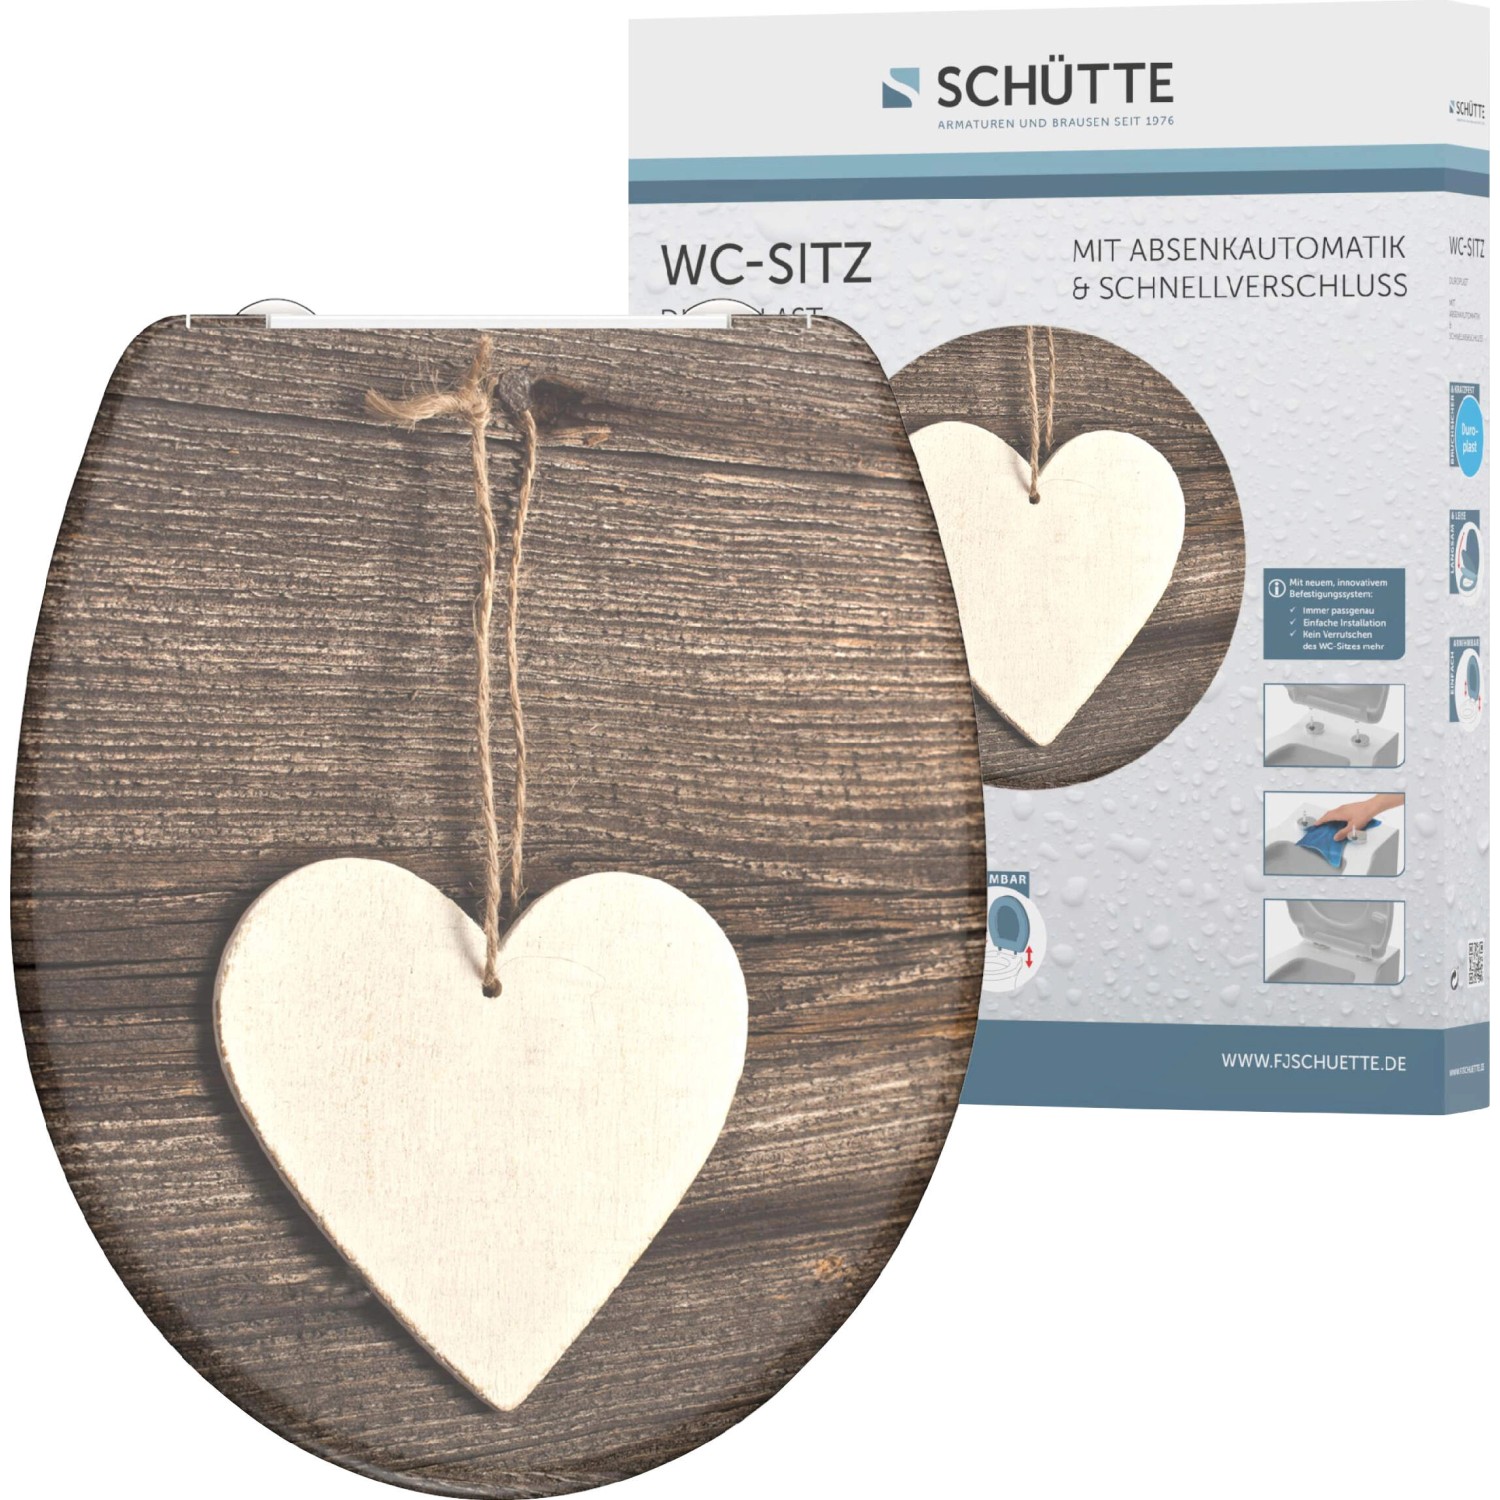 Schütte WC-Sitz Wood Heart Duroplast mit Absenkautomatik & Schnellverschluss von Schütte